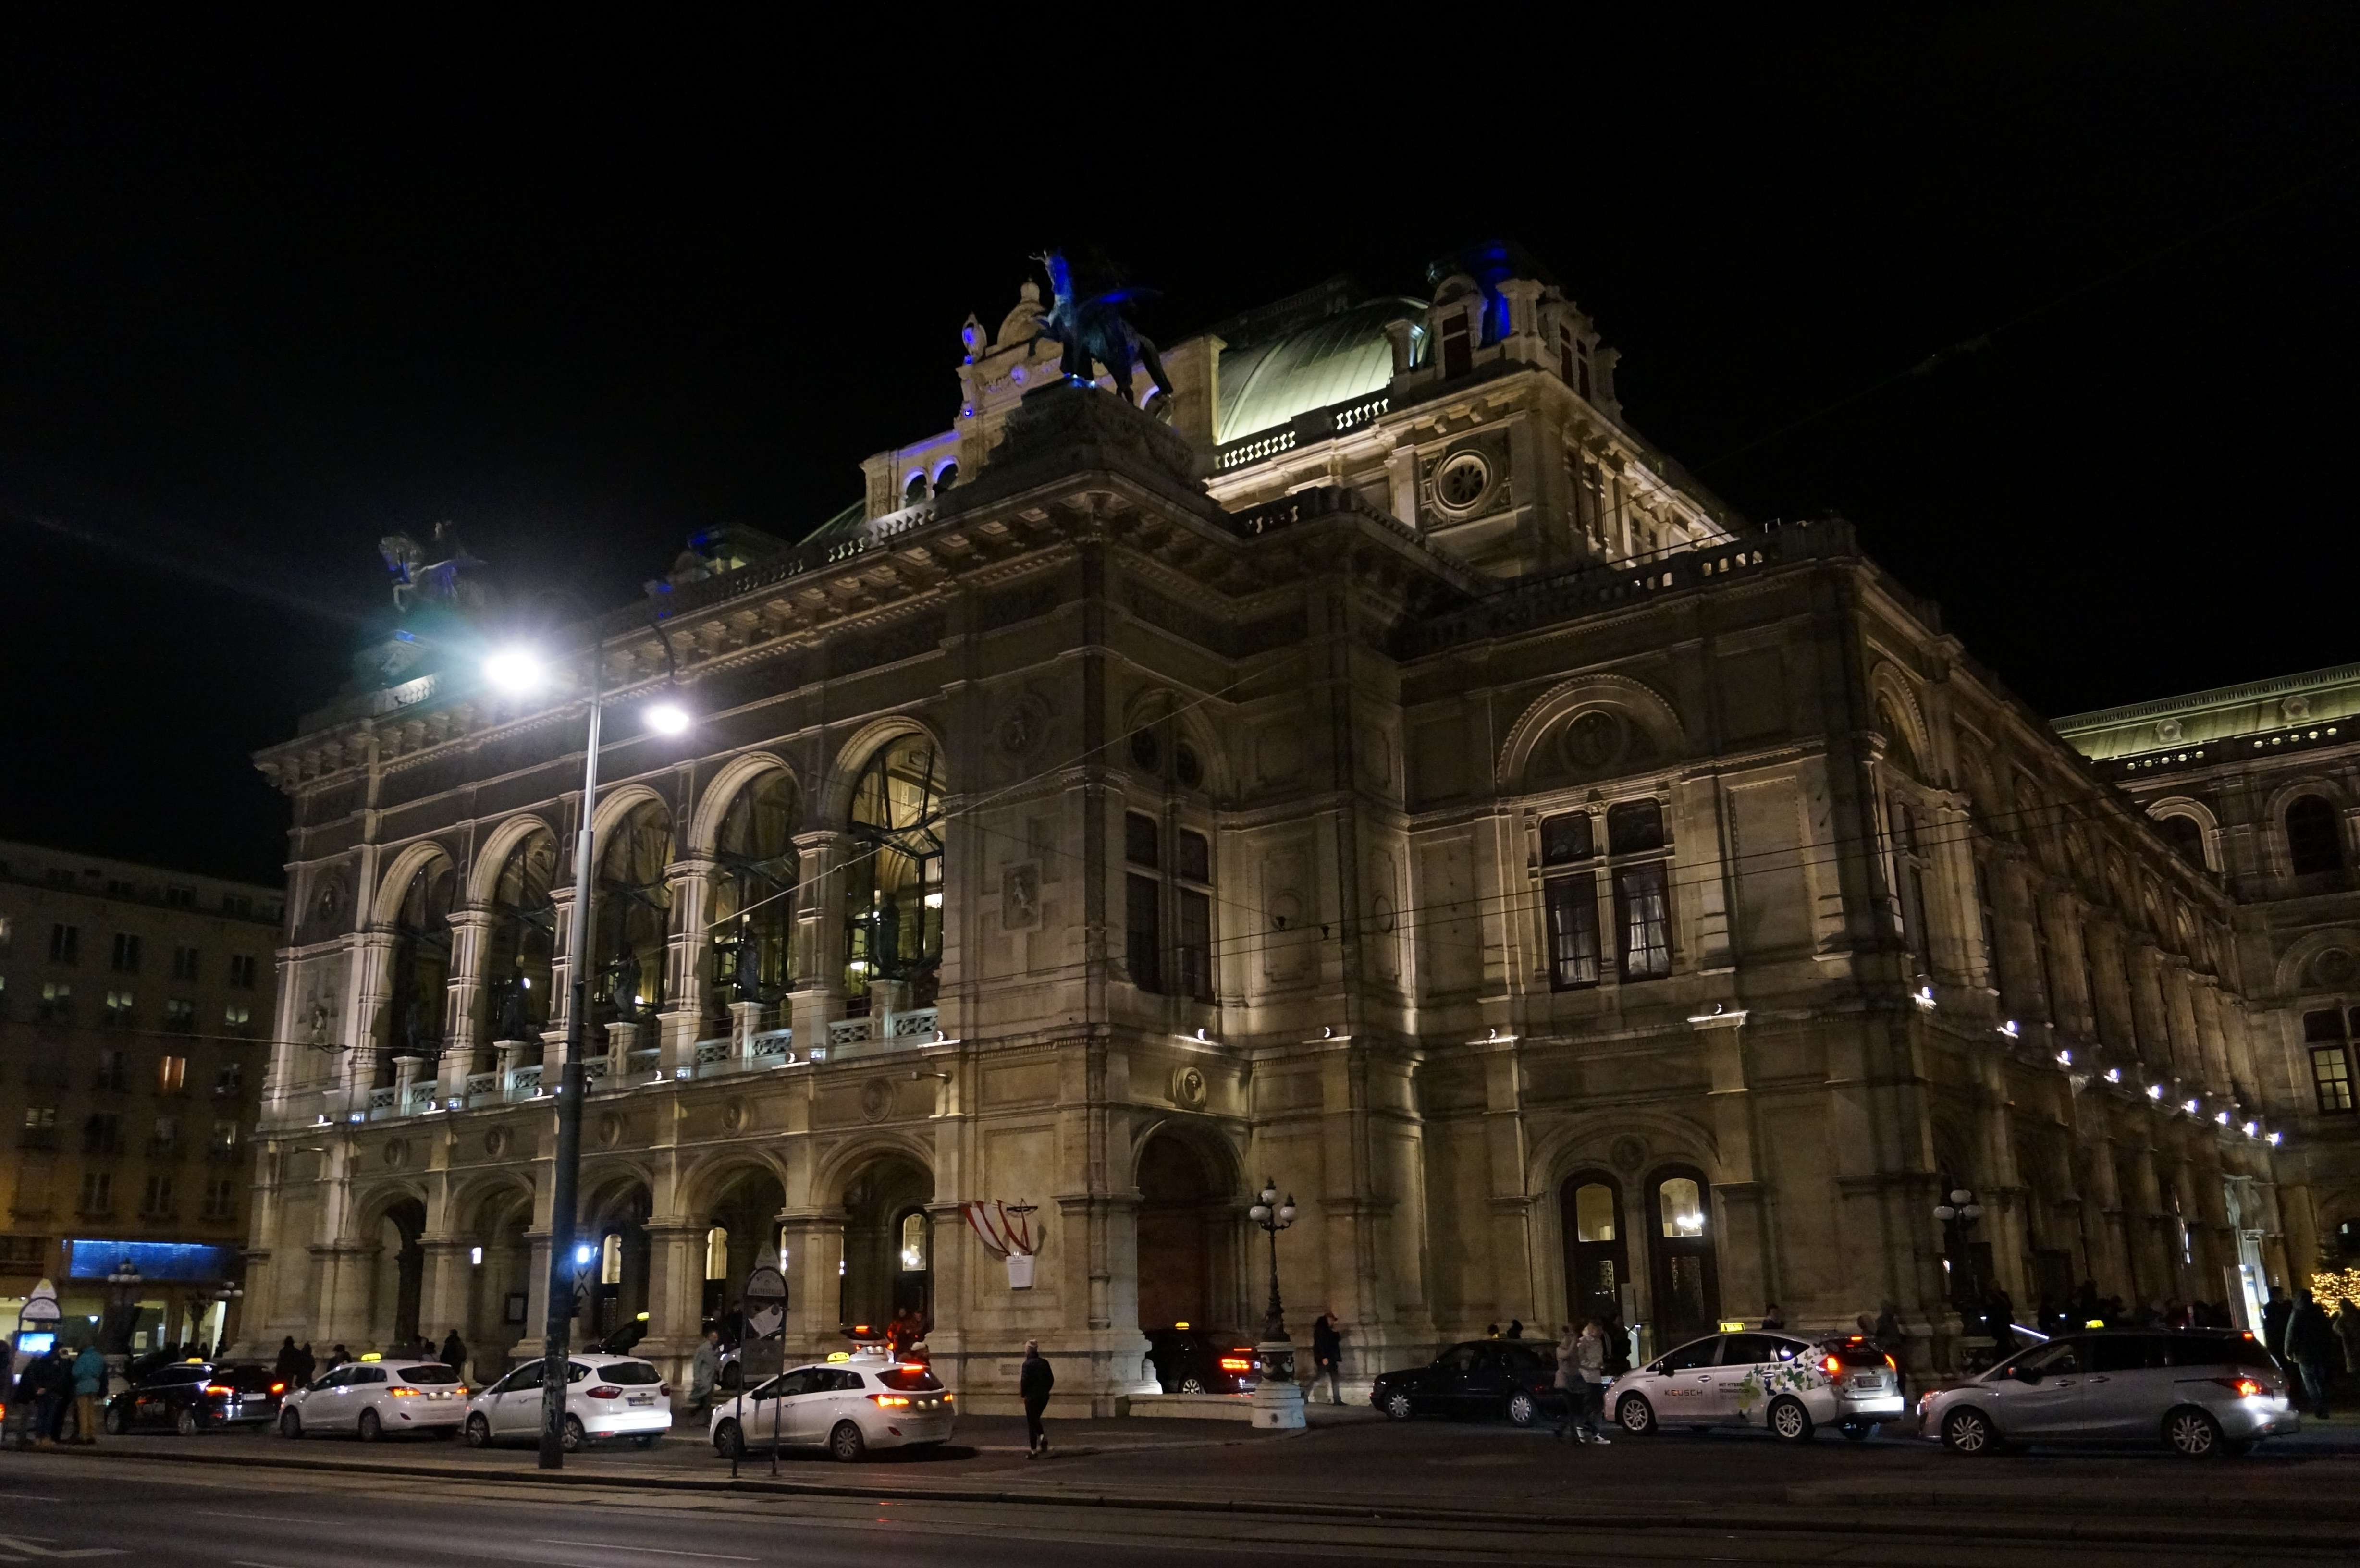 Dia 3 - Viena: Centro Histótico y Ópera - Praga, Viena y Budapest en 1 semana: Diciembre de luces e historia (8)